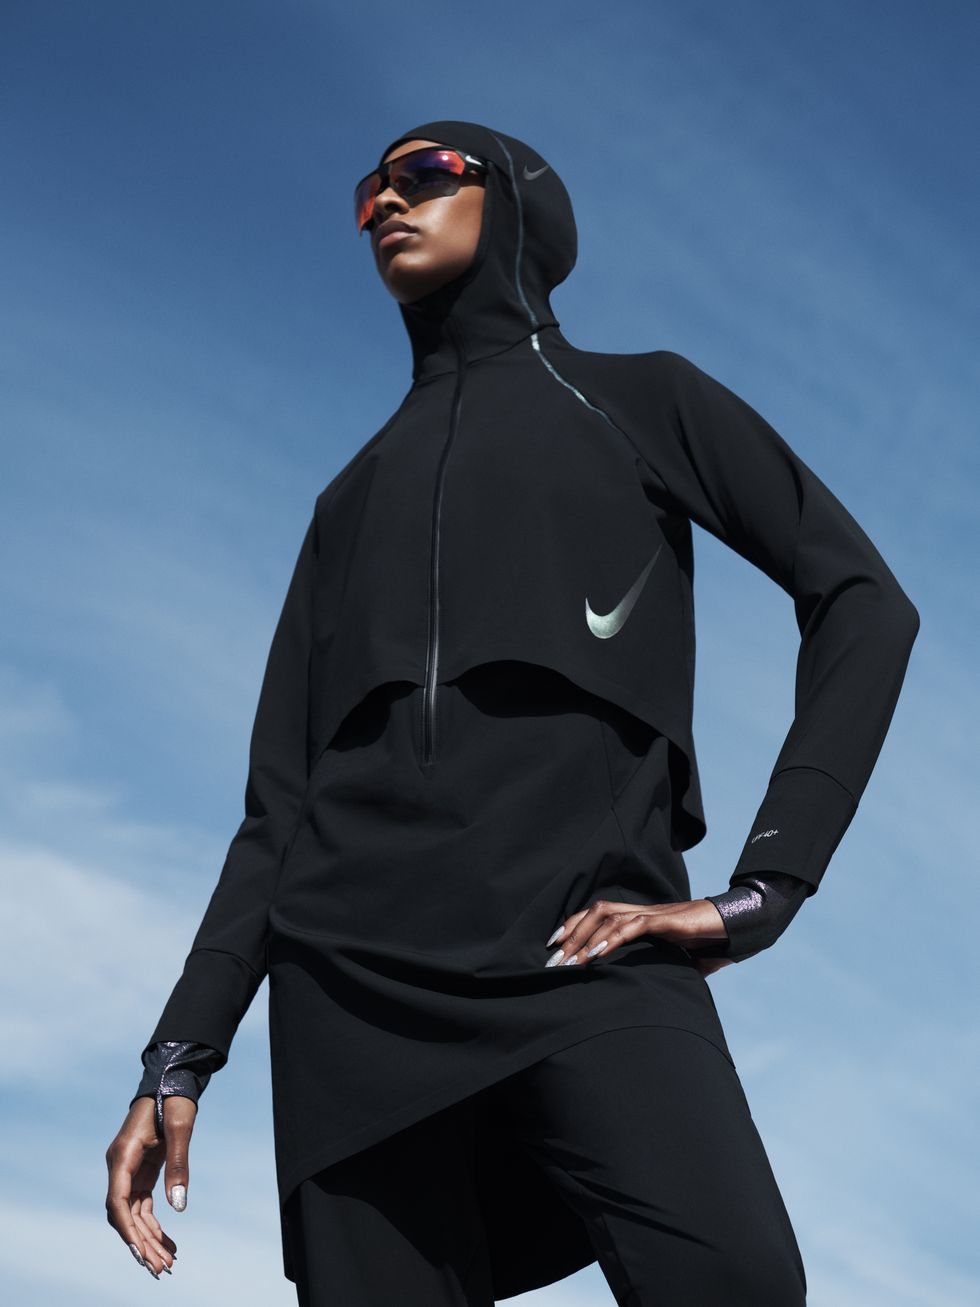 Hijsen Helder op Dollar Nike Make Waves with New Inclusivity Swimwear Range